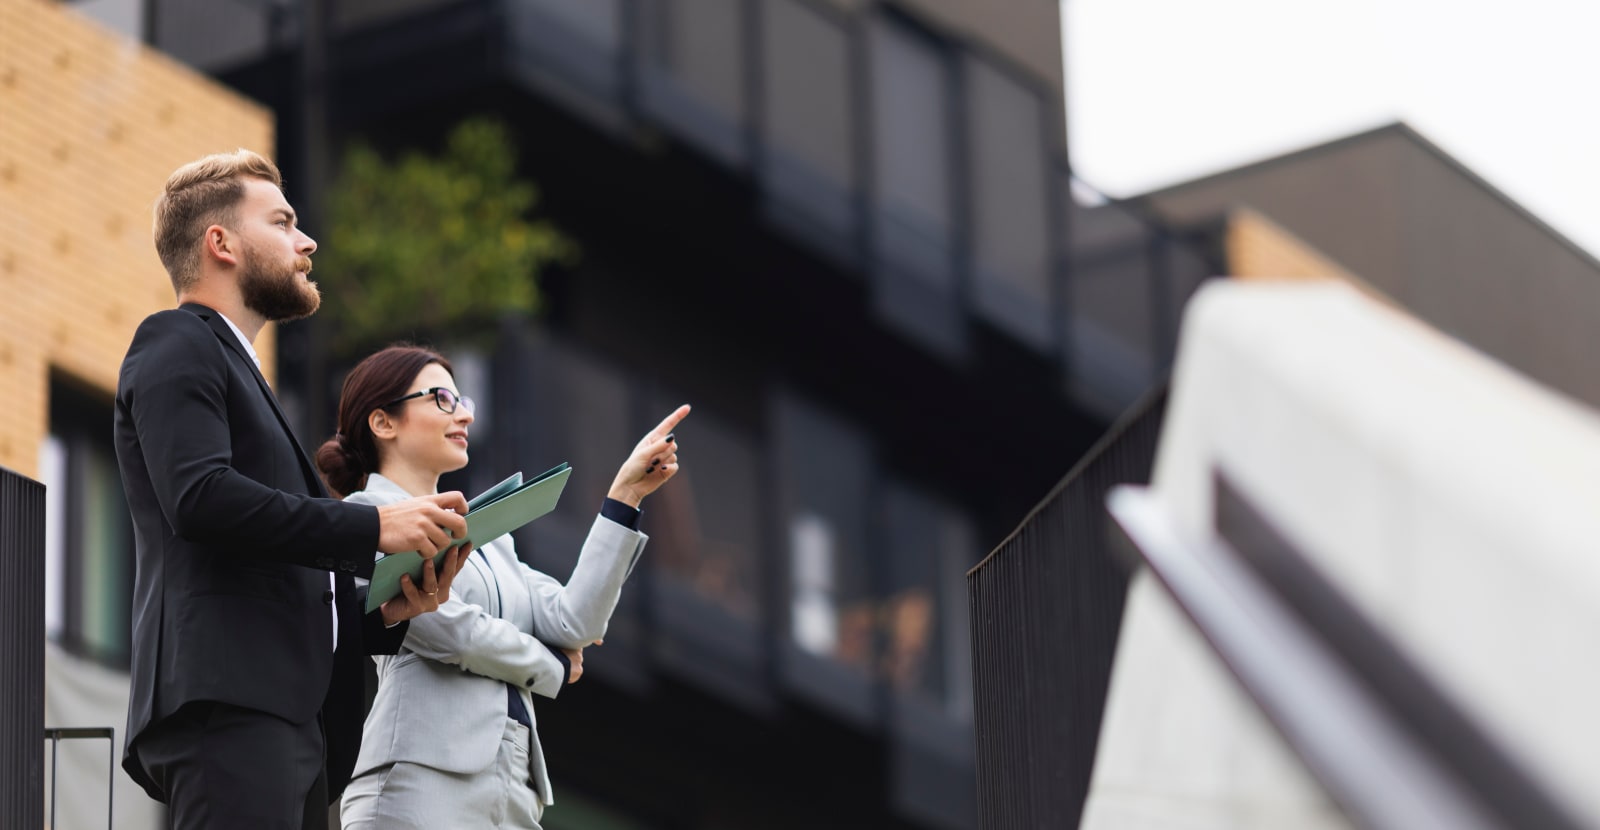 Ein Mann und eine Frau im Business-Outfit stehen draussen vor einem Gebäude, die Frau zeigt auf etwas.